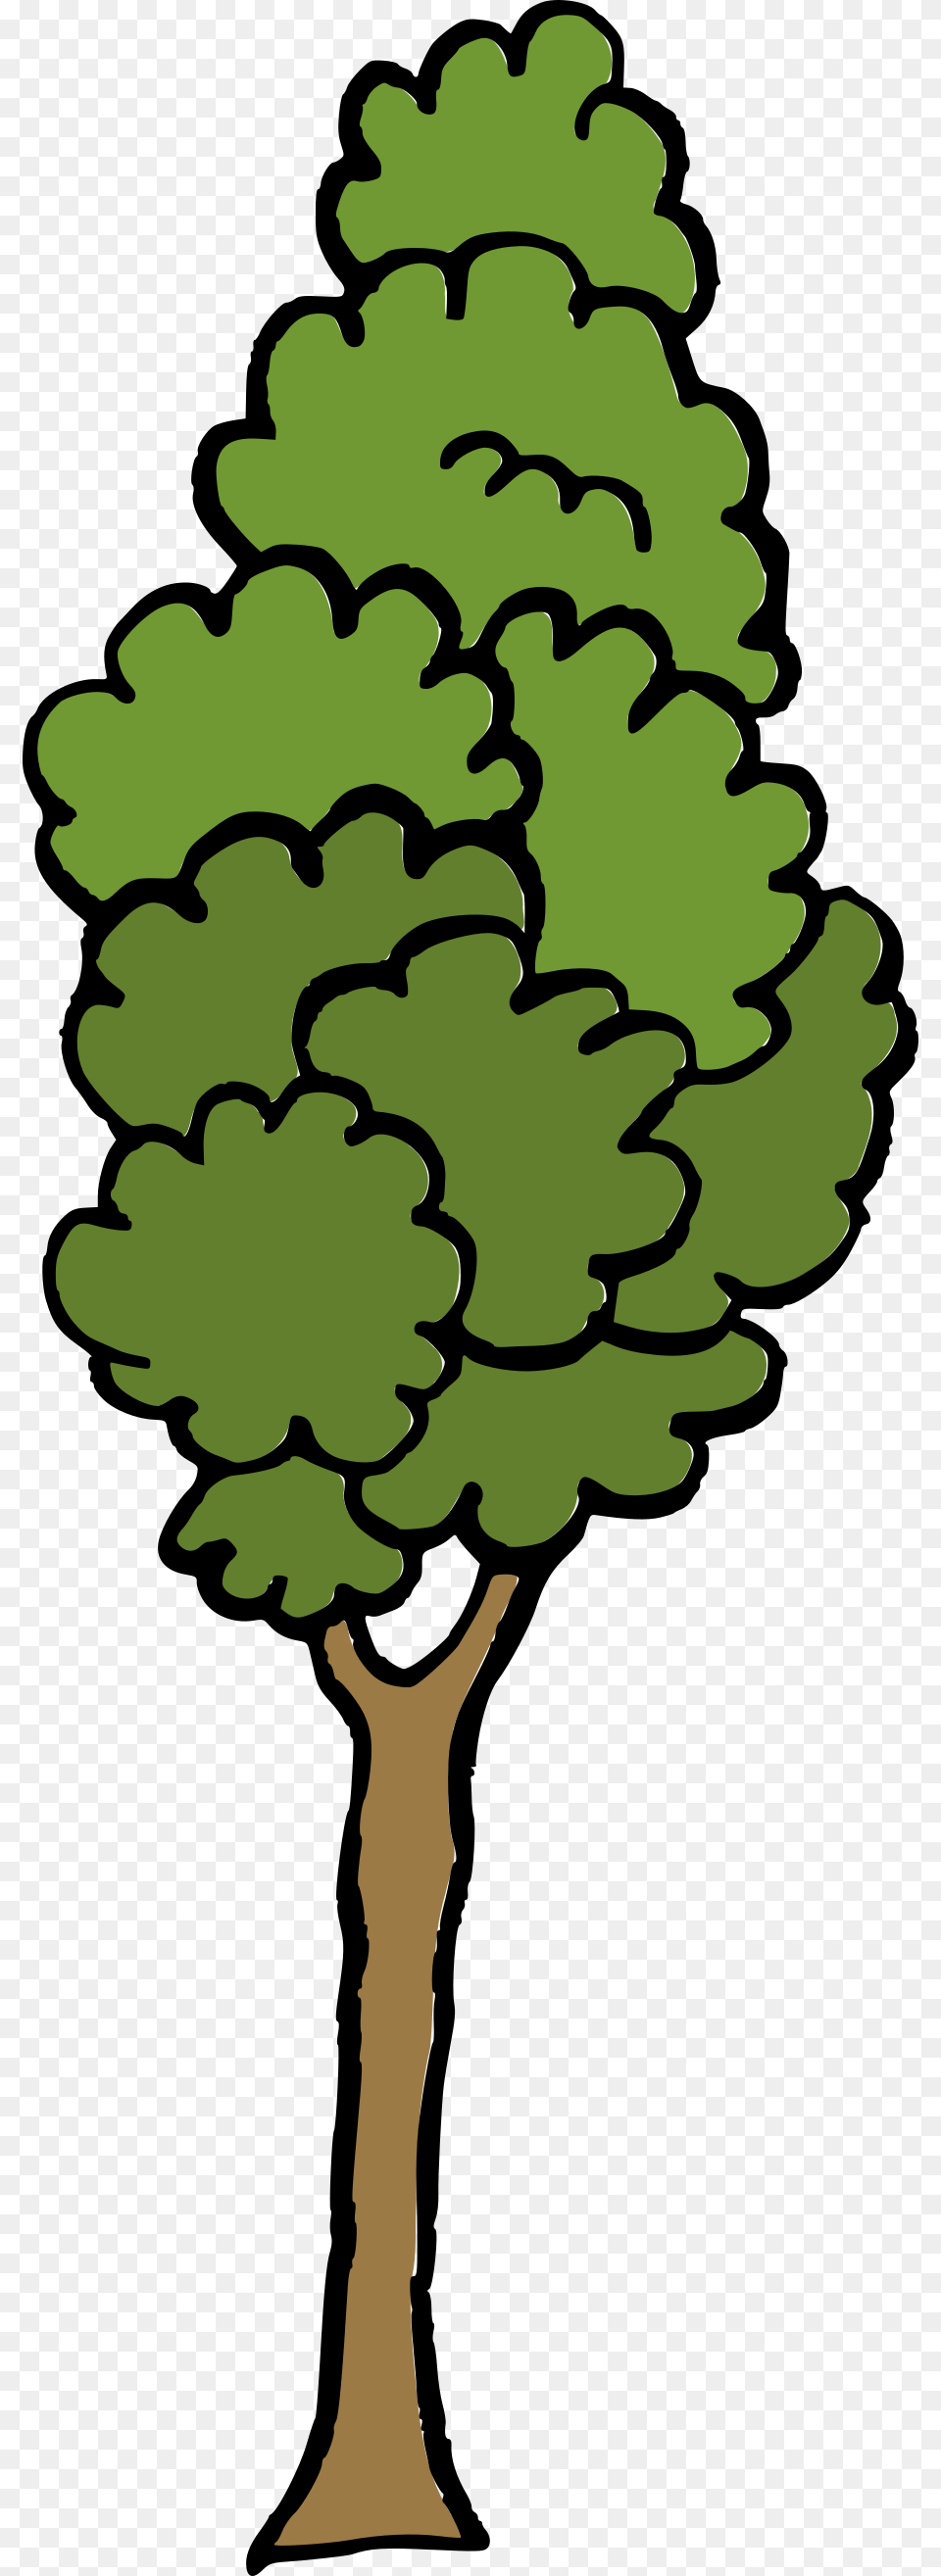 Cartoon Tree, Conifer, Plant, Person, Oak Png